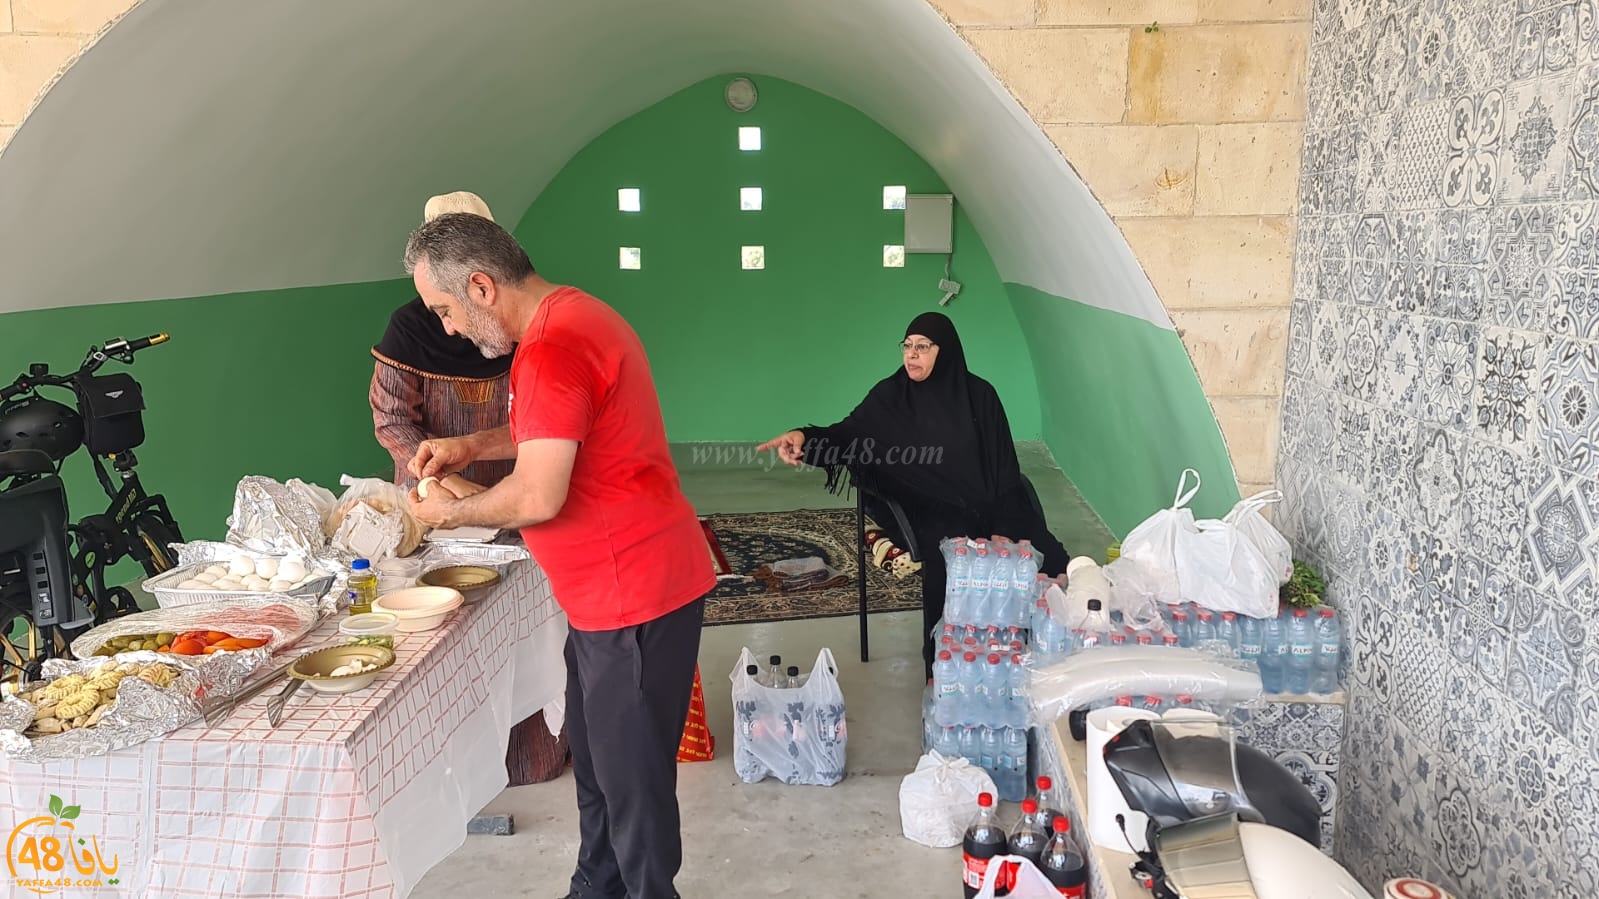  يافا: لجنة اكرام الميت تُنظم معسكراً لتنظيف وصيانة مقبرة طاسو